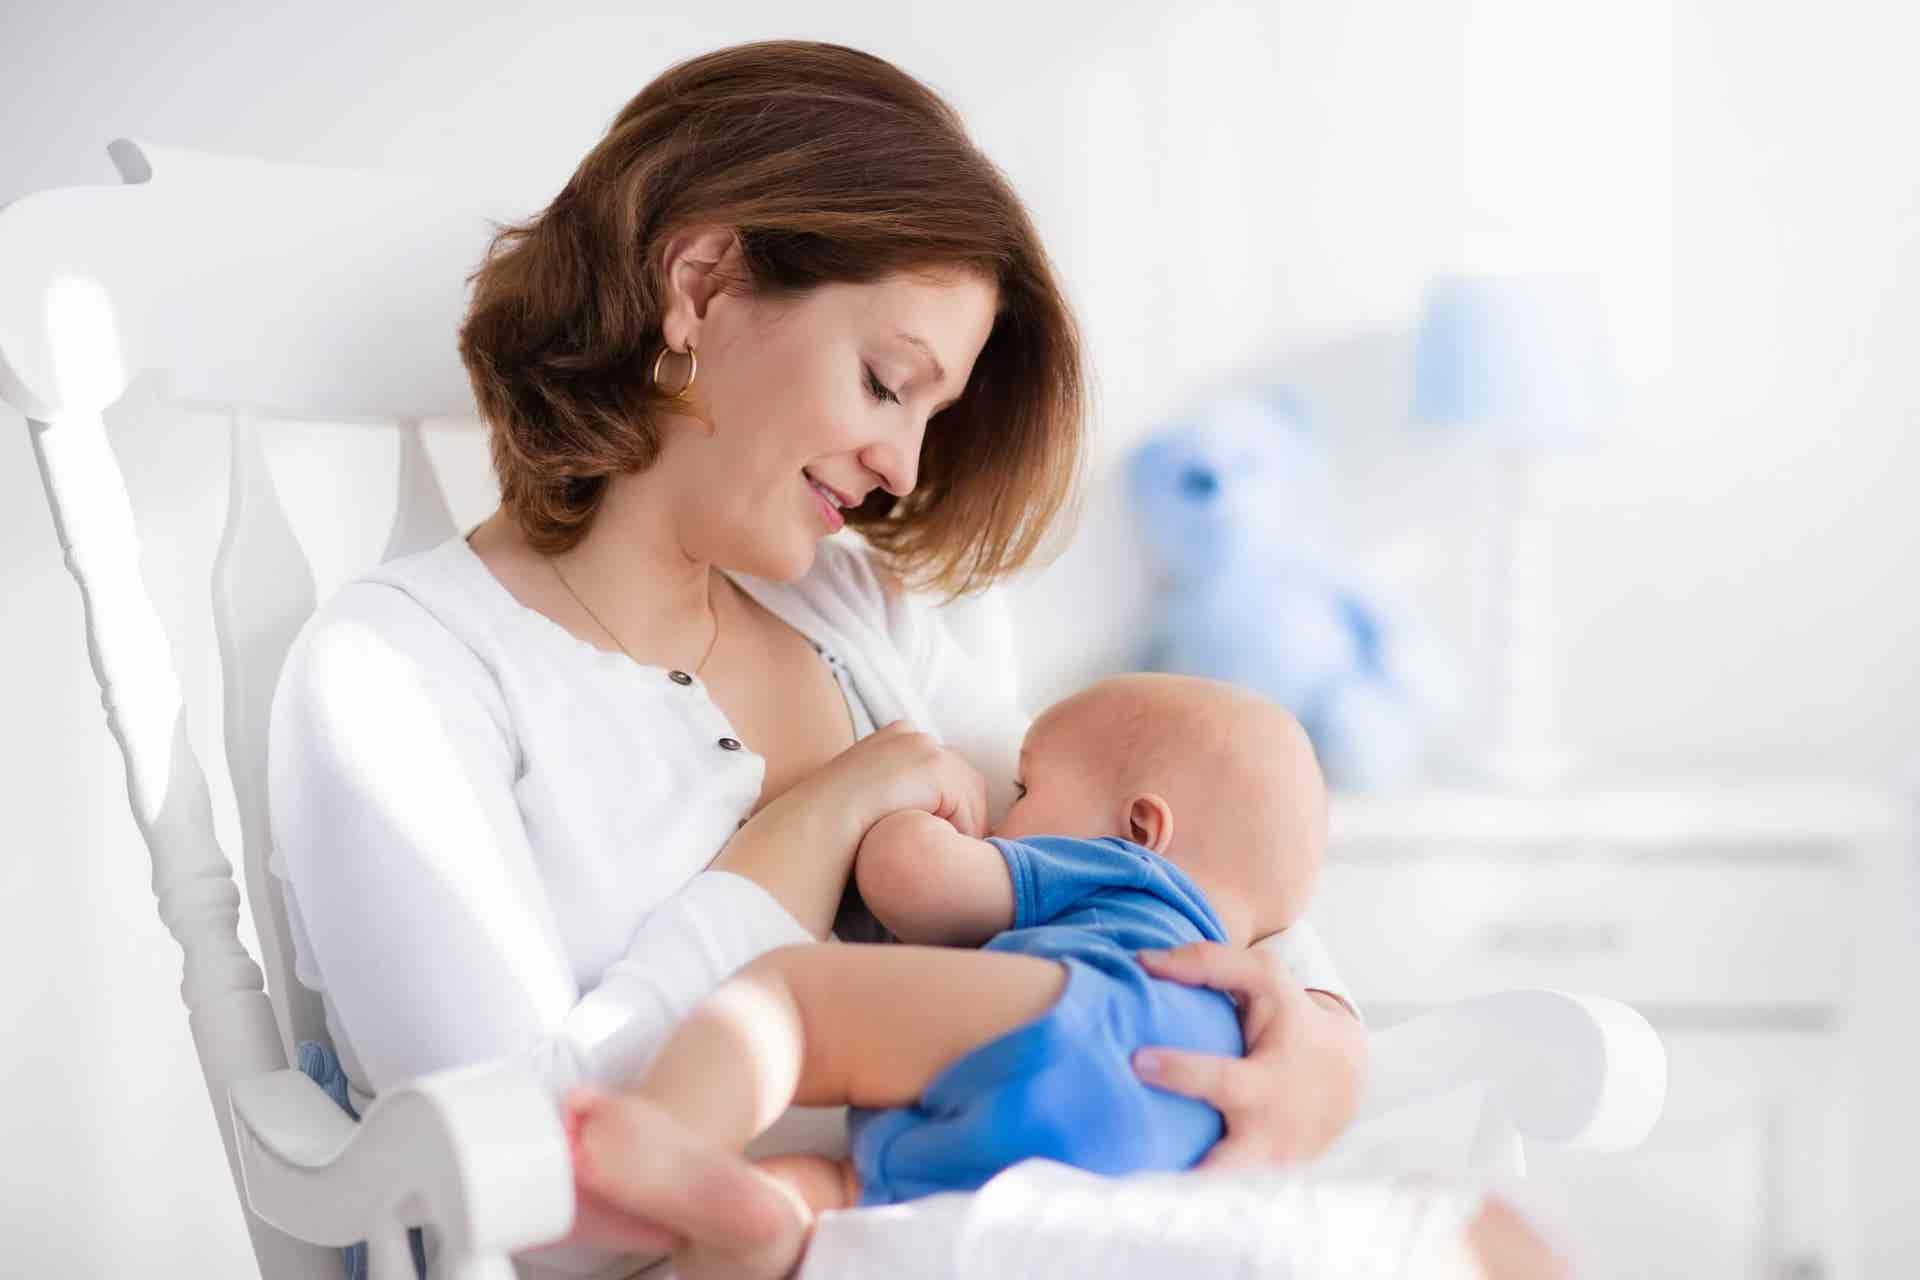 a woman breastfeeding a baby